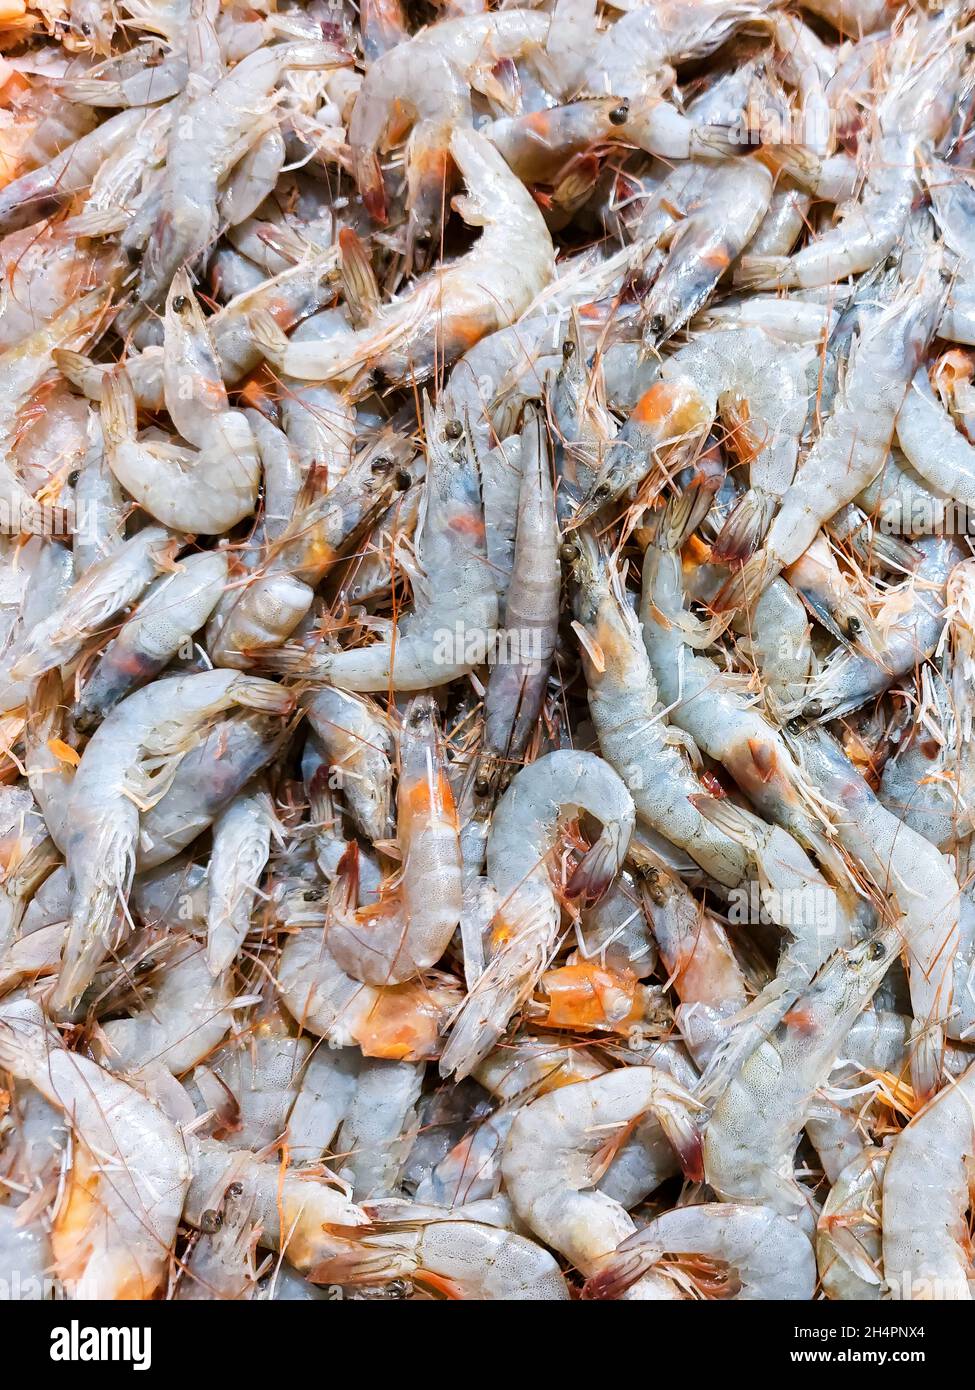 Crevettes tigrées fraîches noires.Concept de cuisine de fruits de mer.Une alimentation saine.Ingrédient de la recette.Commercialiser le produit Banque D'Images